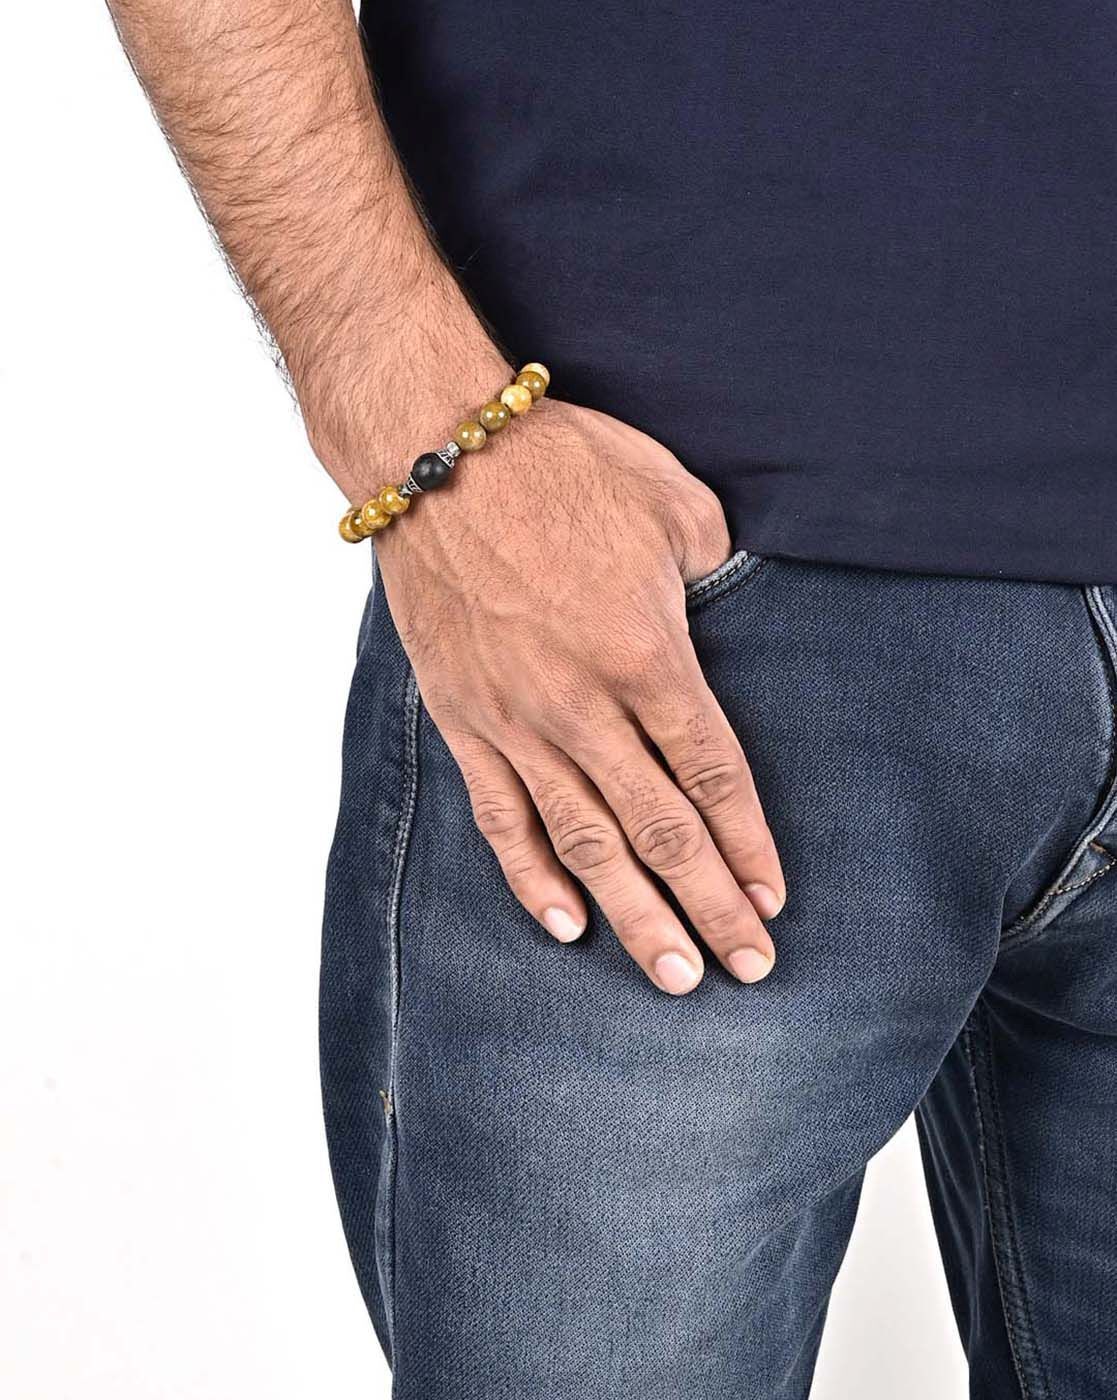 Braccialetti jeans | Denim jewelry, Fabric cuff bracelet, Denim bracelet